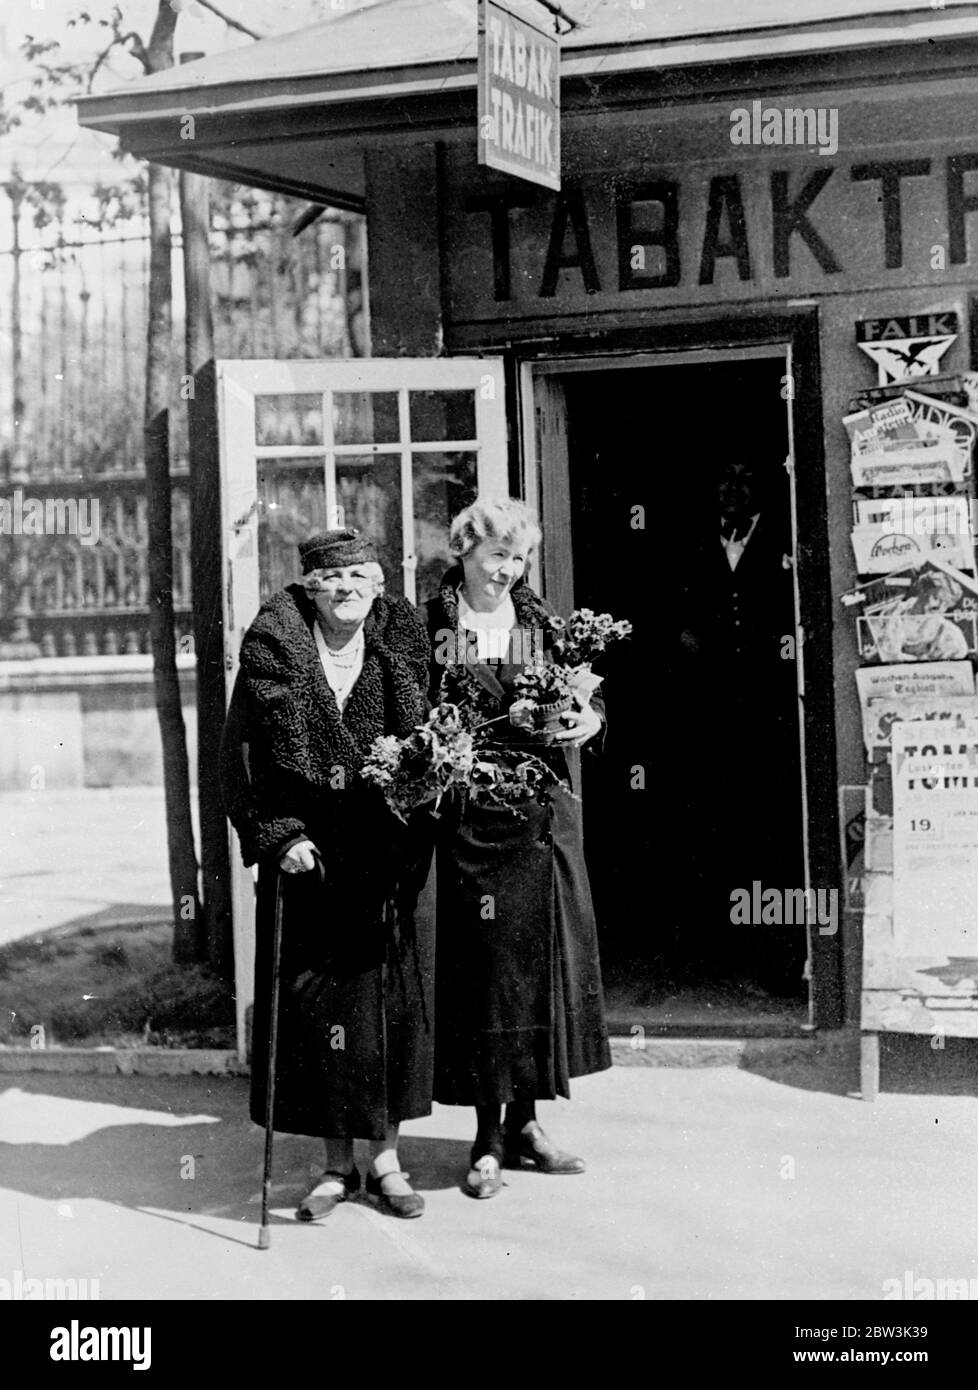 Baroness Opernsängerin besitzt jetzt Kiosk. Annie Dirkens (Baroness Hauenstein), einst eine der berühmtesten Opernsängerinnen Wiens, ist heute Inhaberin eines Zeitungskiosk in der Nähe der Burgthester in Wien. Foto zeigt, Baroness Annie Dirkens Hauenstein (links) mit ihrer Tochter vor dem Kiosk. 20. April 1936 Stockfoto